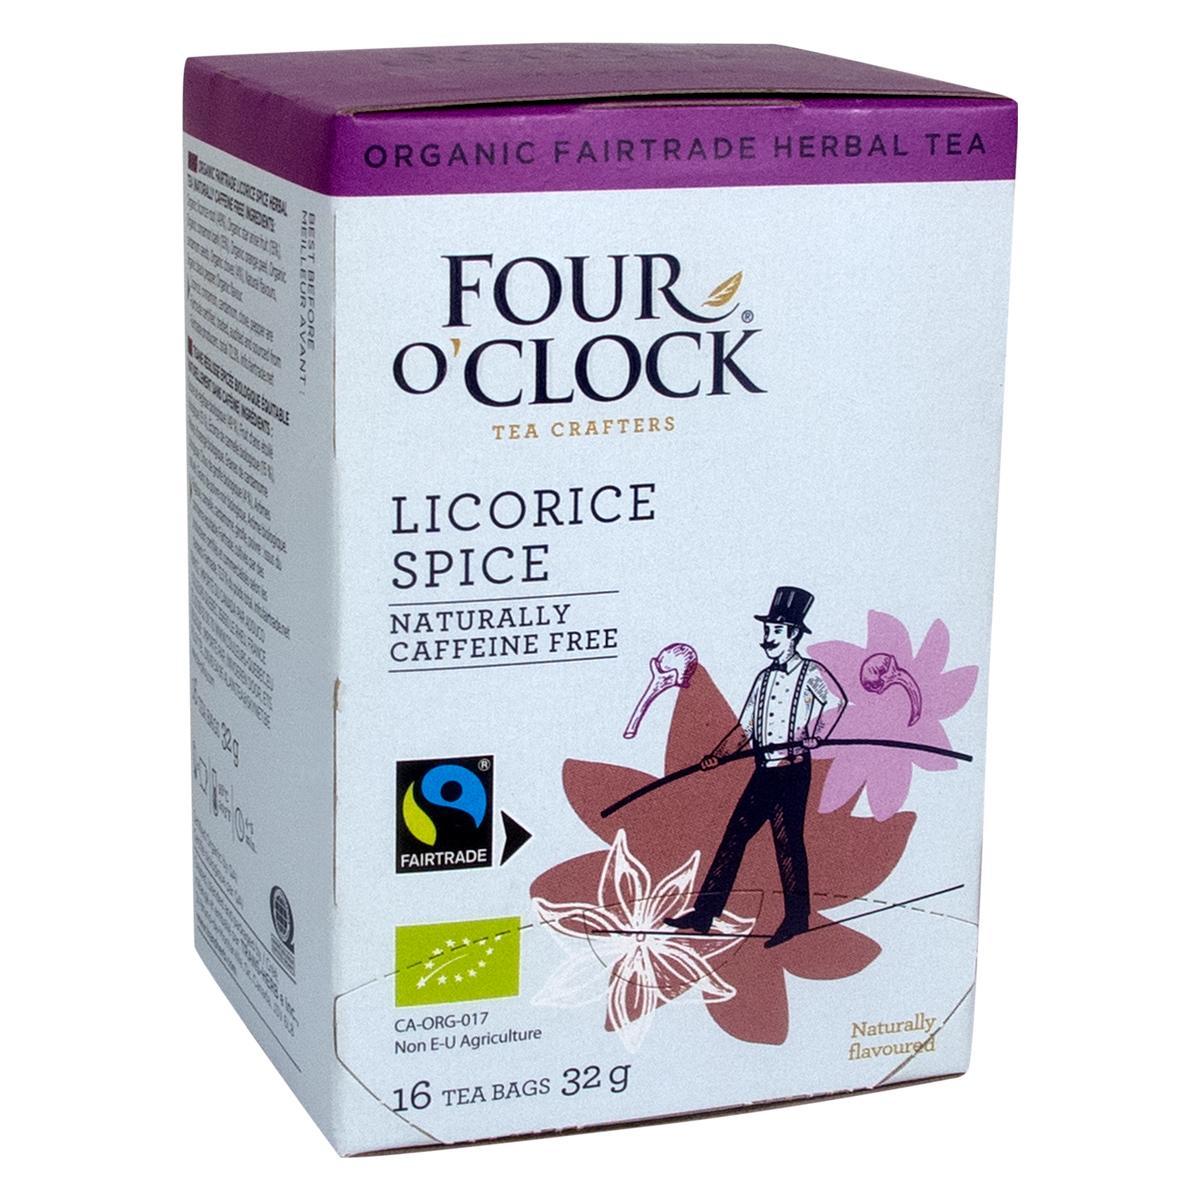 Four O’Clock's Four O'Clock LICORICE SPICE'